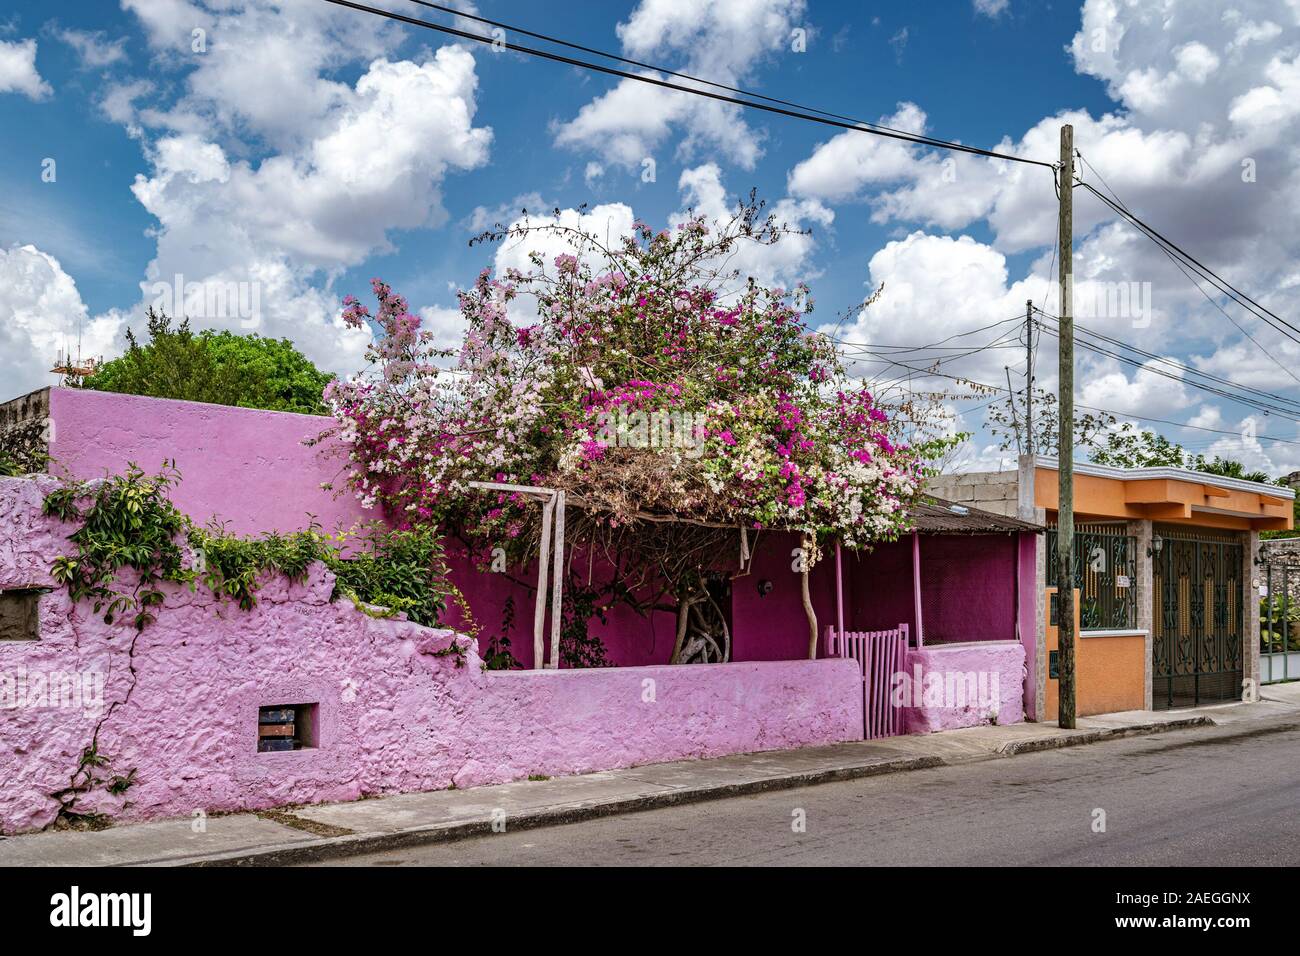 Pintadas edificio rosa con buganvillas arbusto creciendo fuera en Valladolid, Yucatán, México. Foto de stock